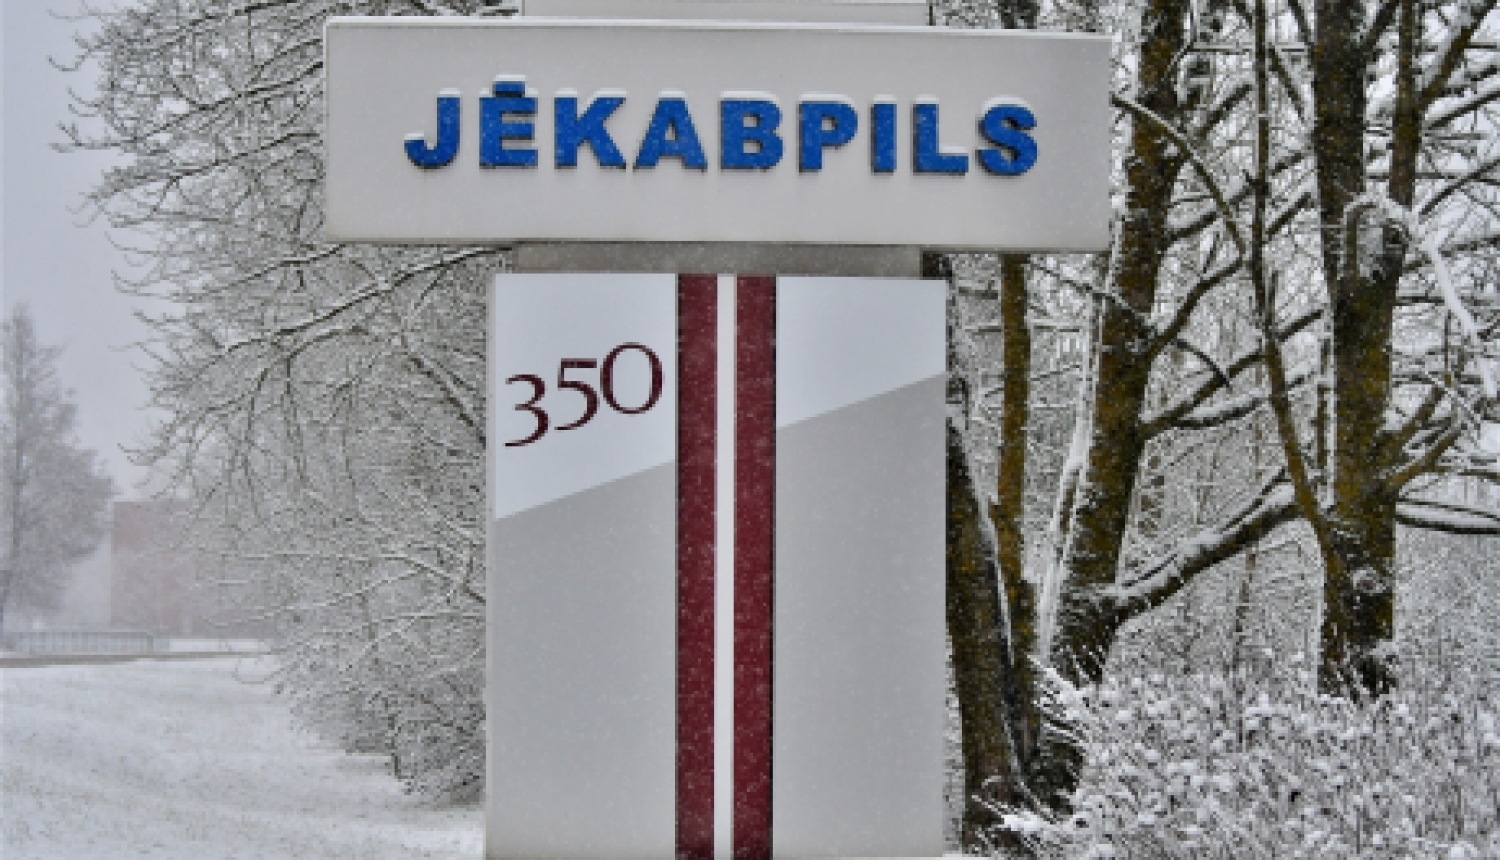 Jēkabpils zīme ceļa malā